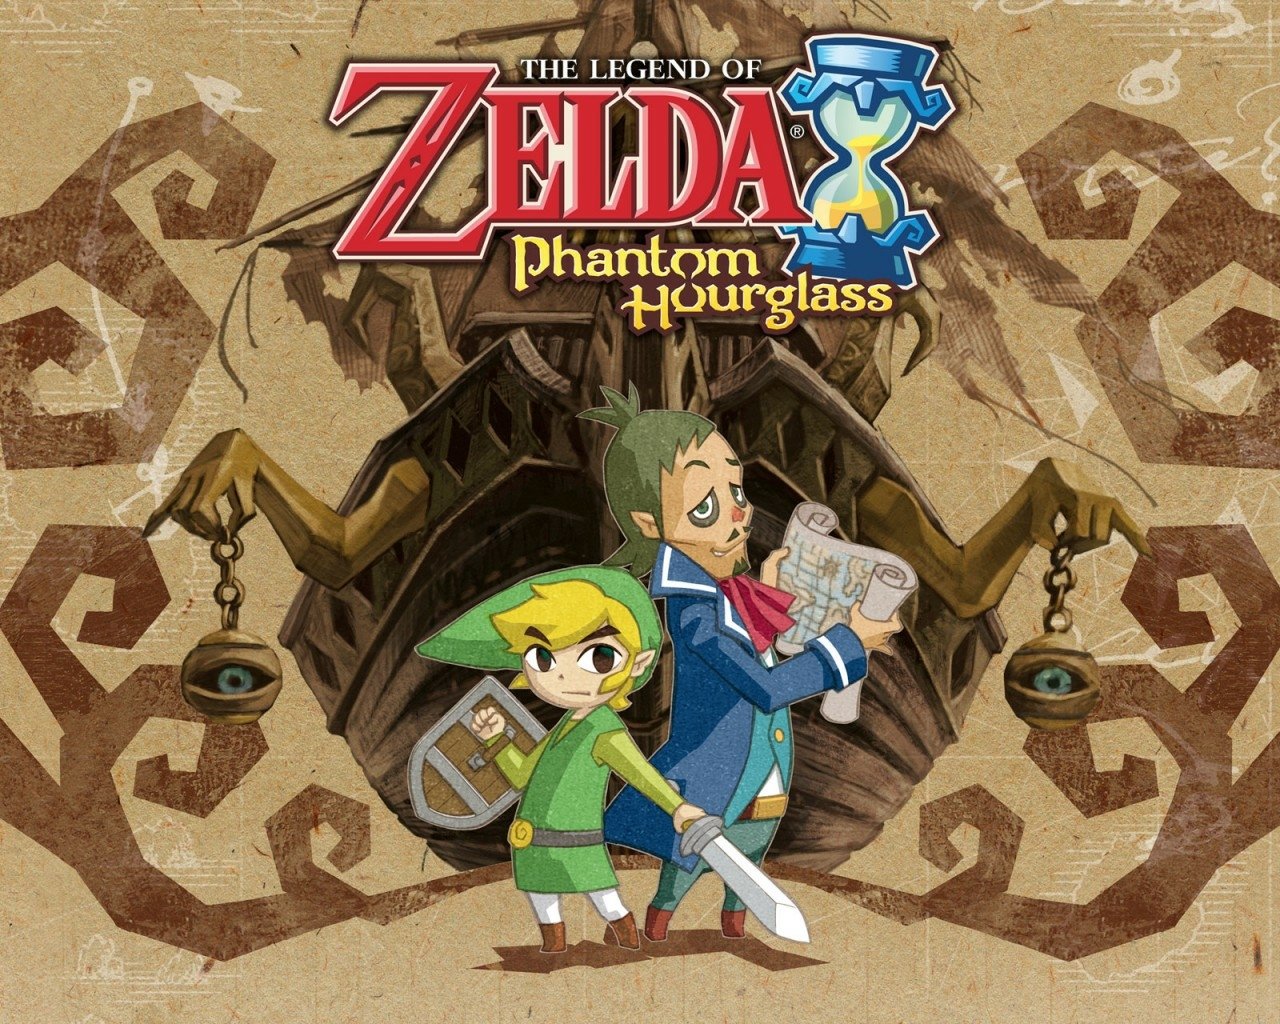 Toon Link Linebeck (The Legend Of Zelda) Link video game The Legend Of Zelda: Phantom Hourglass Image